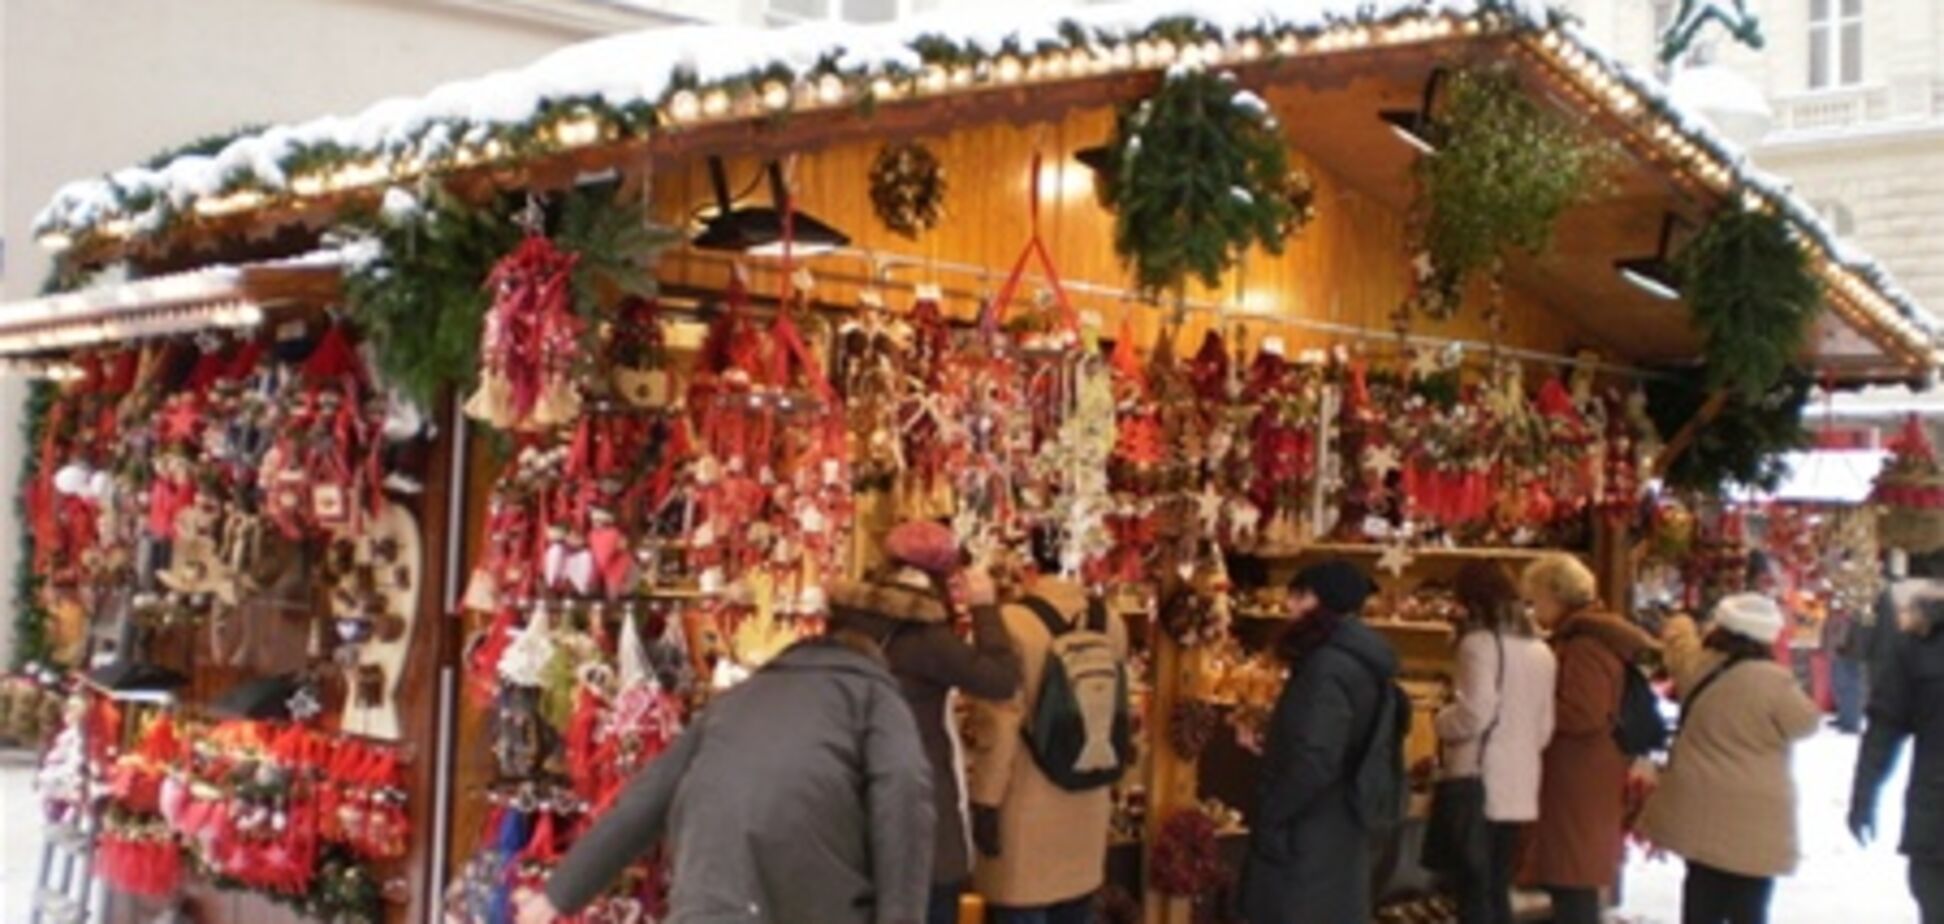 Словацкие рождественские традиции - на ярмарке в Варшаве